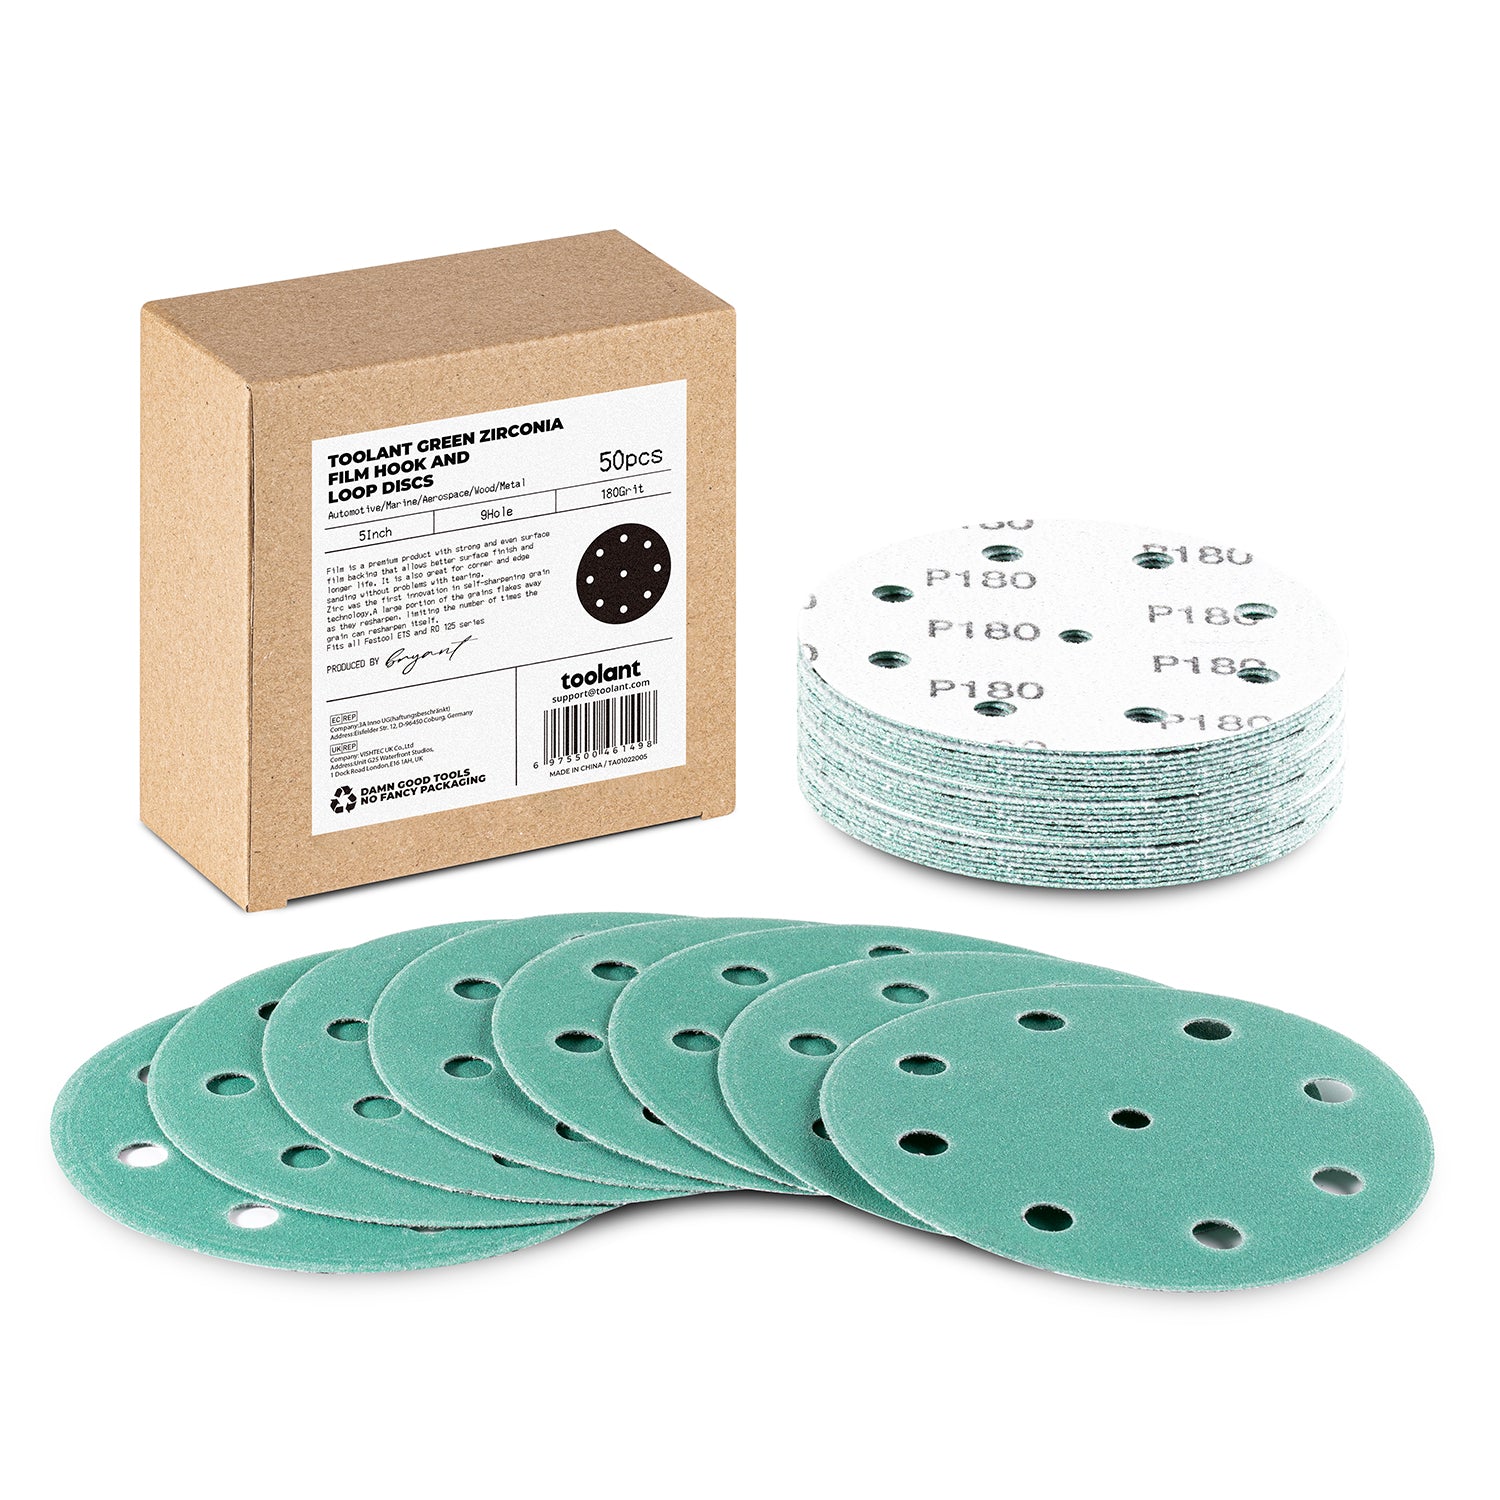 5 Inch Sanding Disc Hook and Loop Pads, Designed For Festool Sanders, 50-Pack